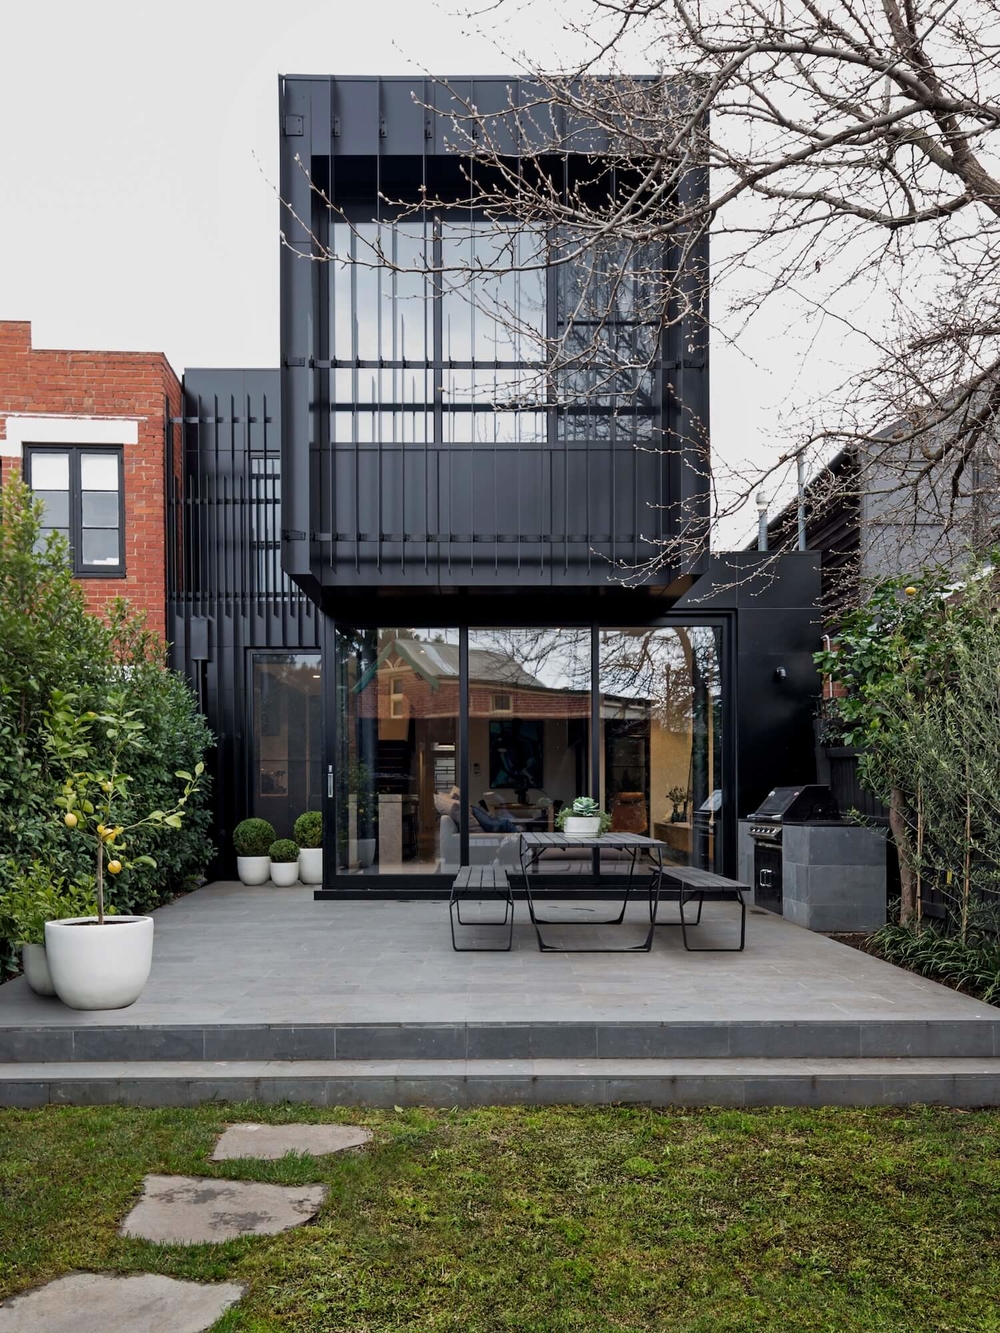 
Ngôi nhà được sơn màu đen nổi bật với 2 tầng gồm 2 container xếp chồng lên nhau